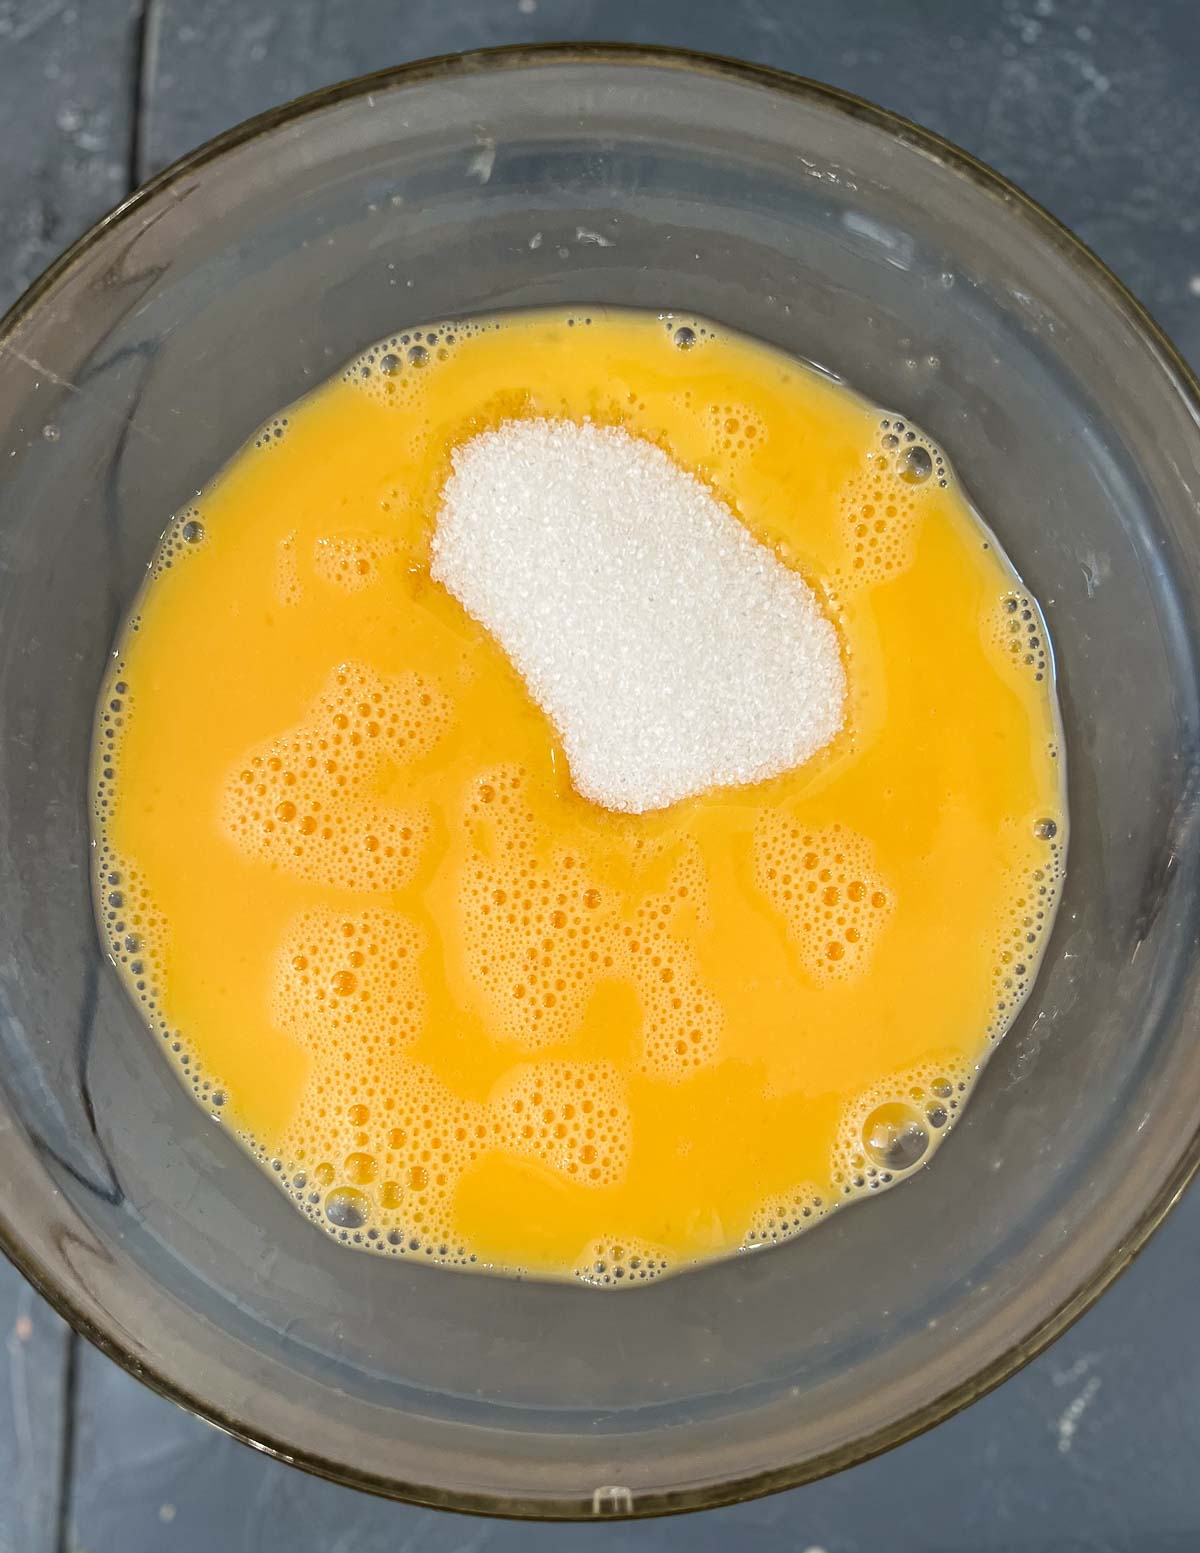 Adding sugar to a beaten egg